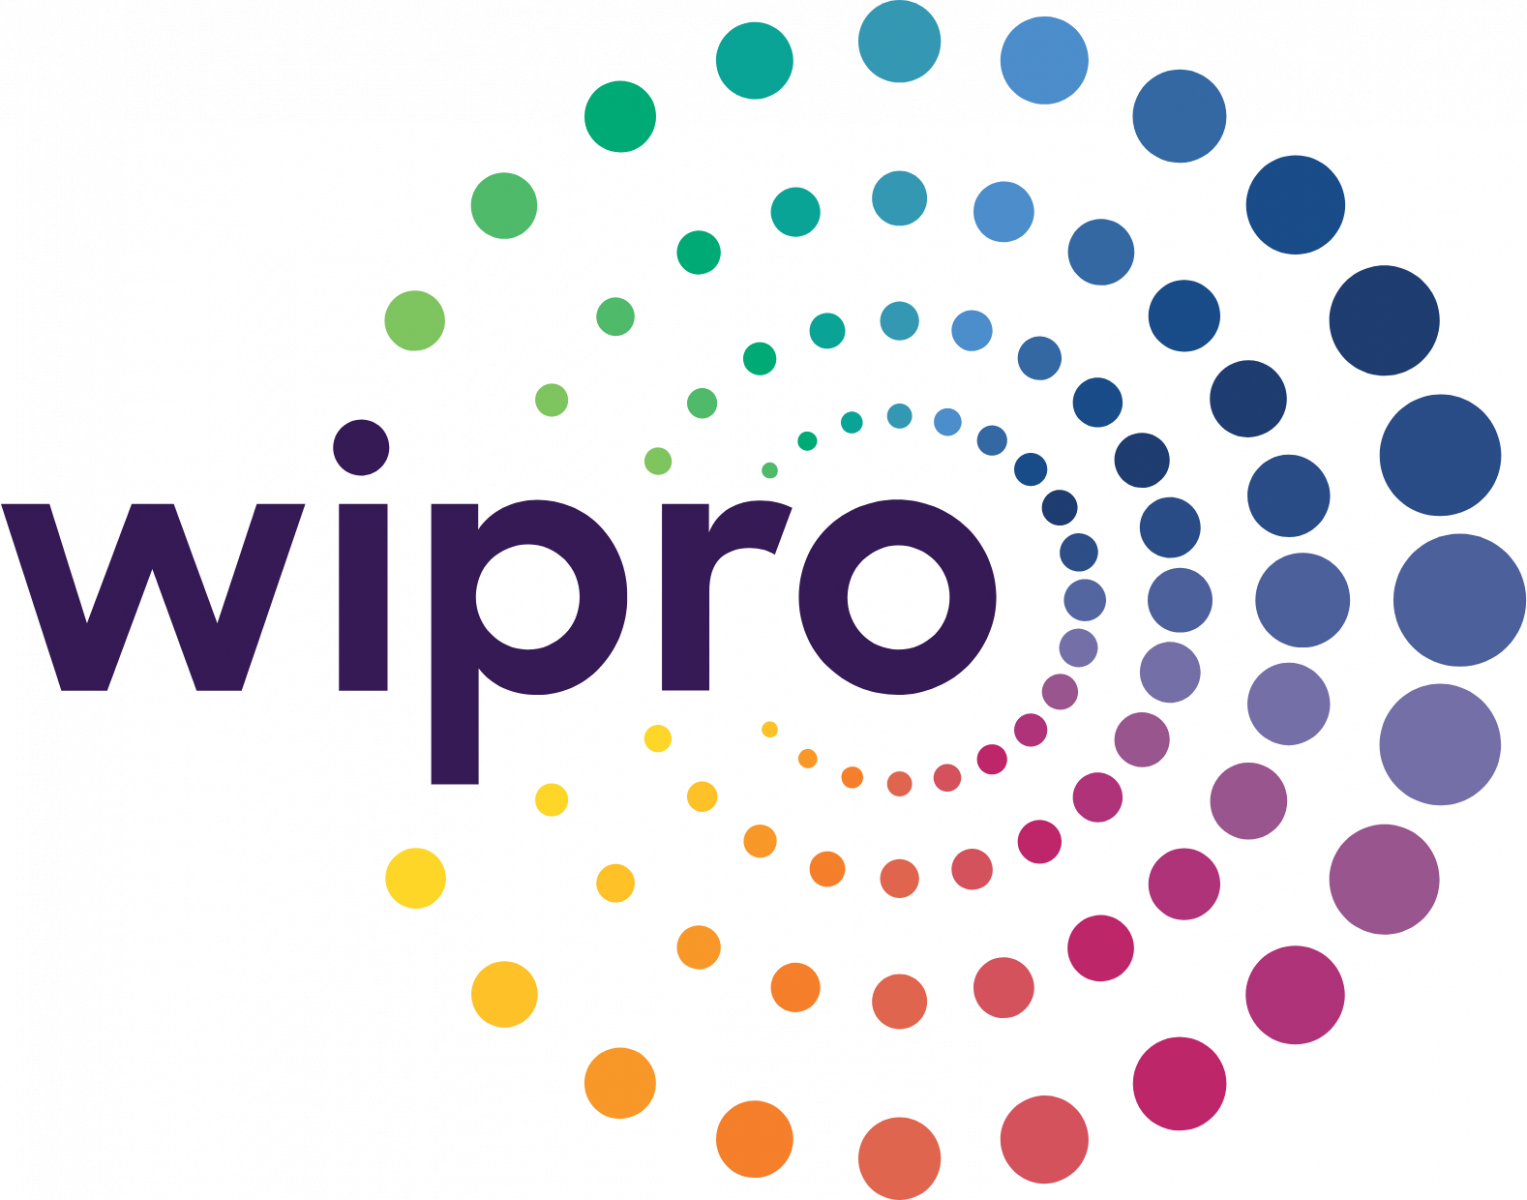 Wipro it companies in Siliguri